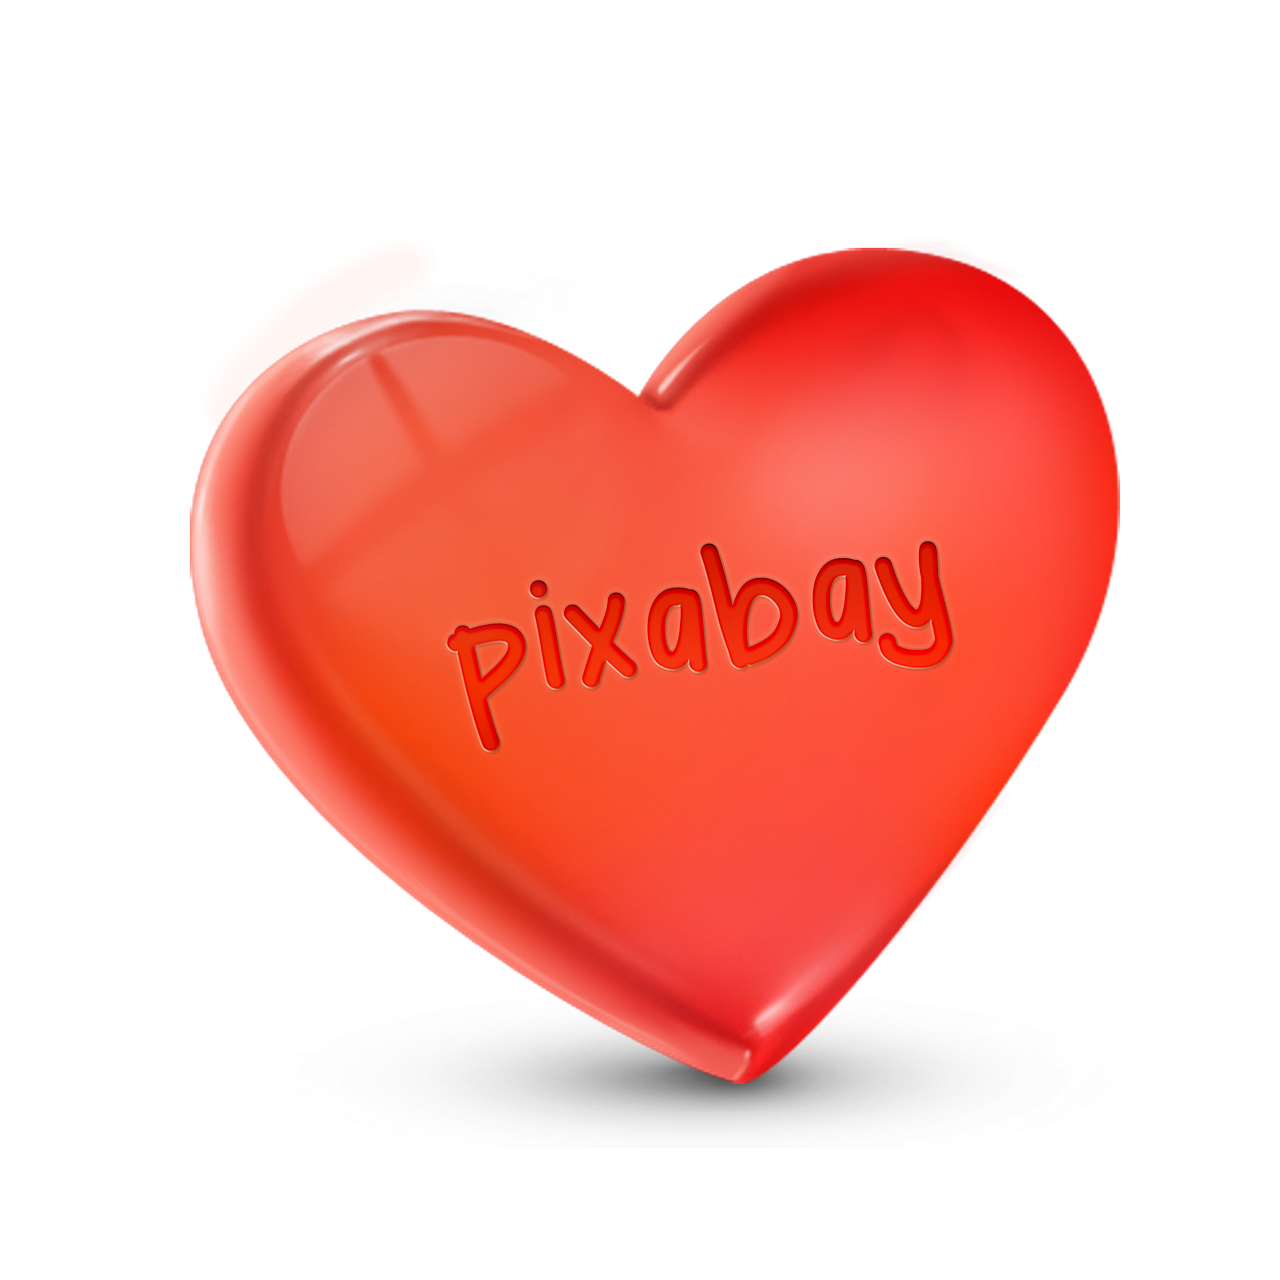 heart love pixabay free photo